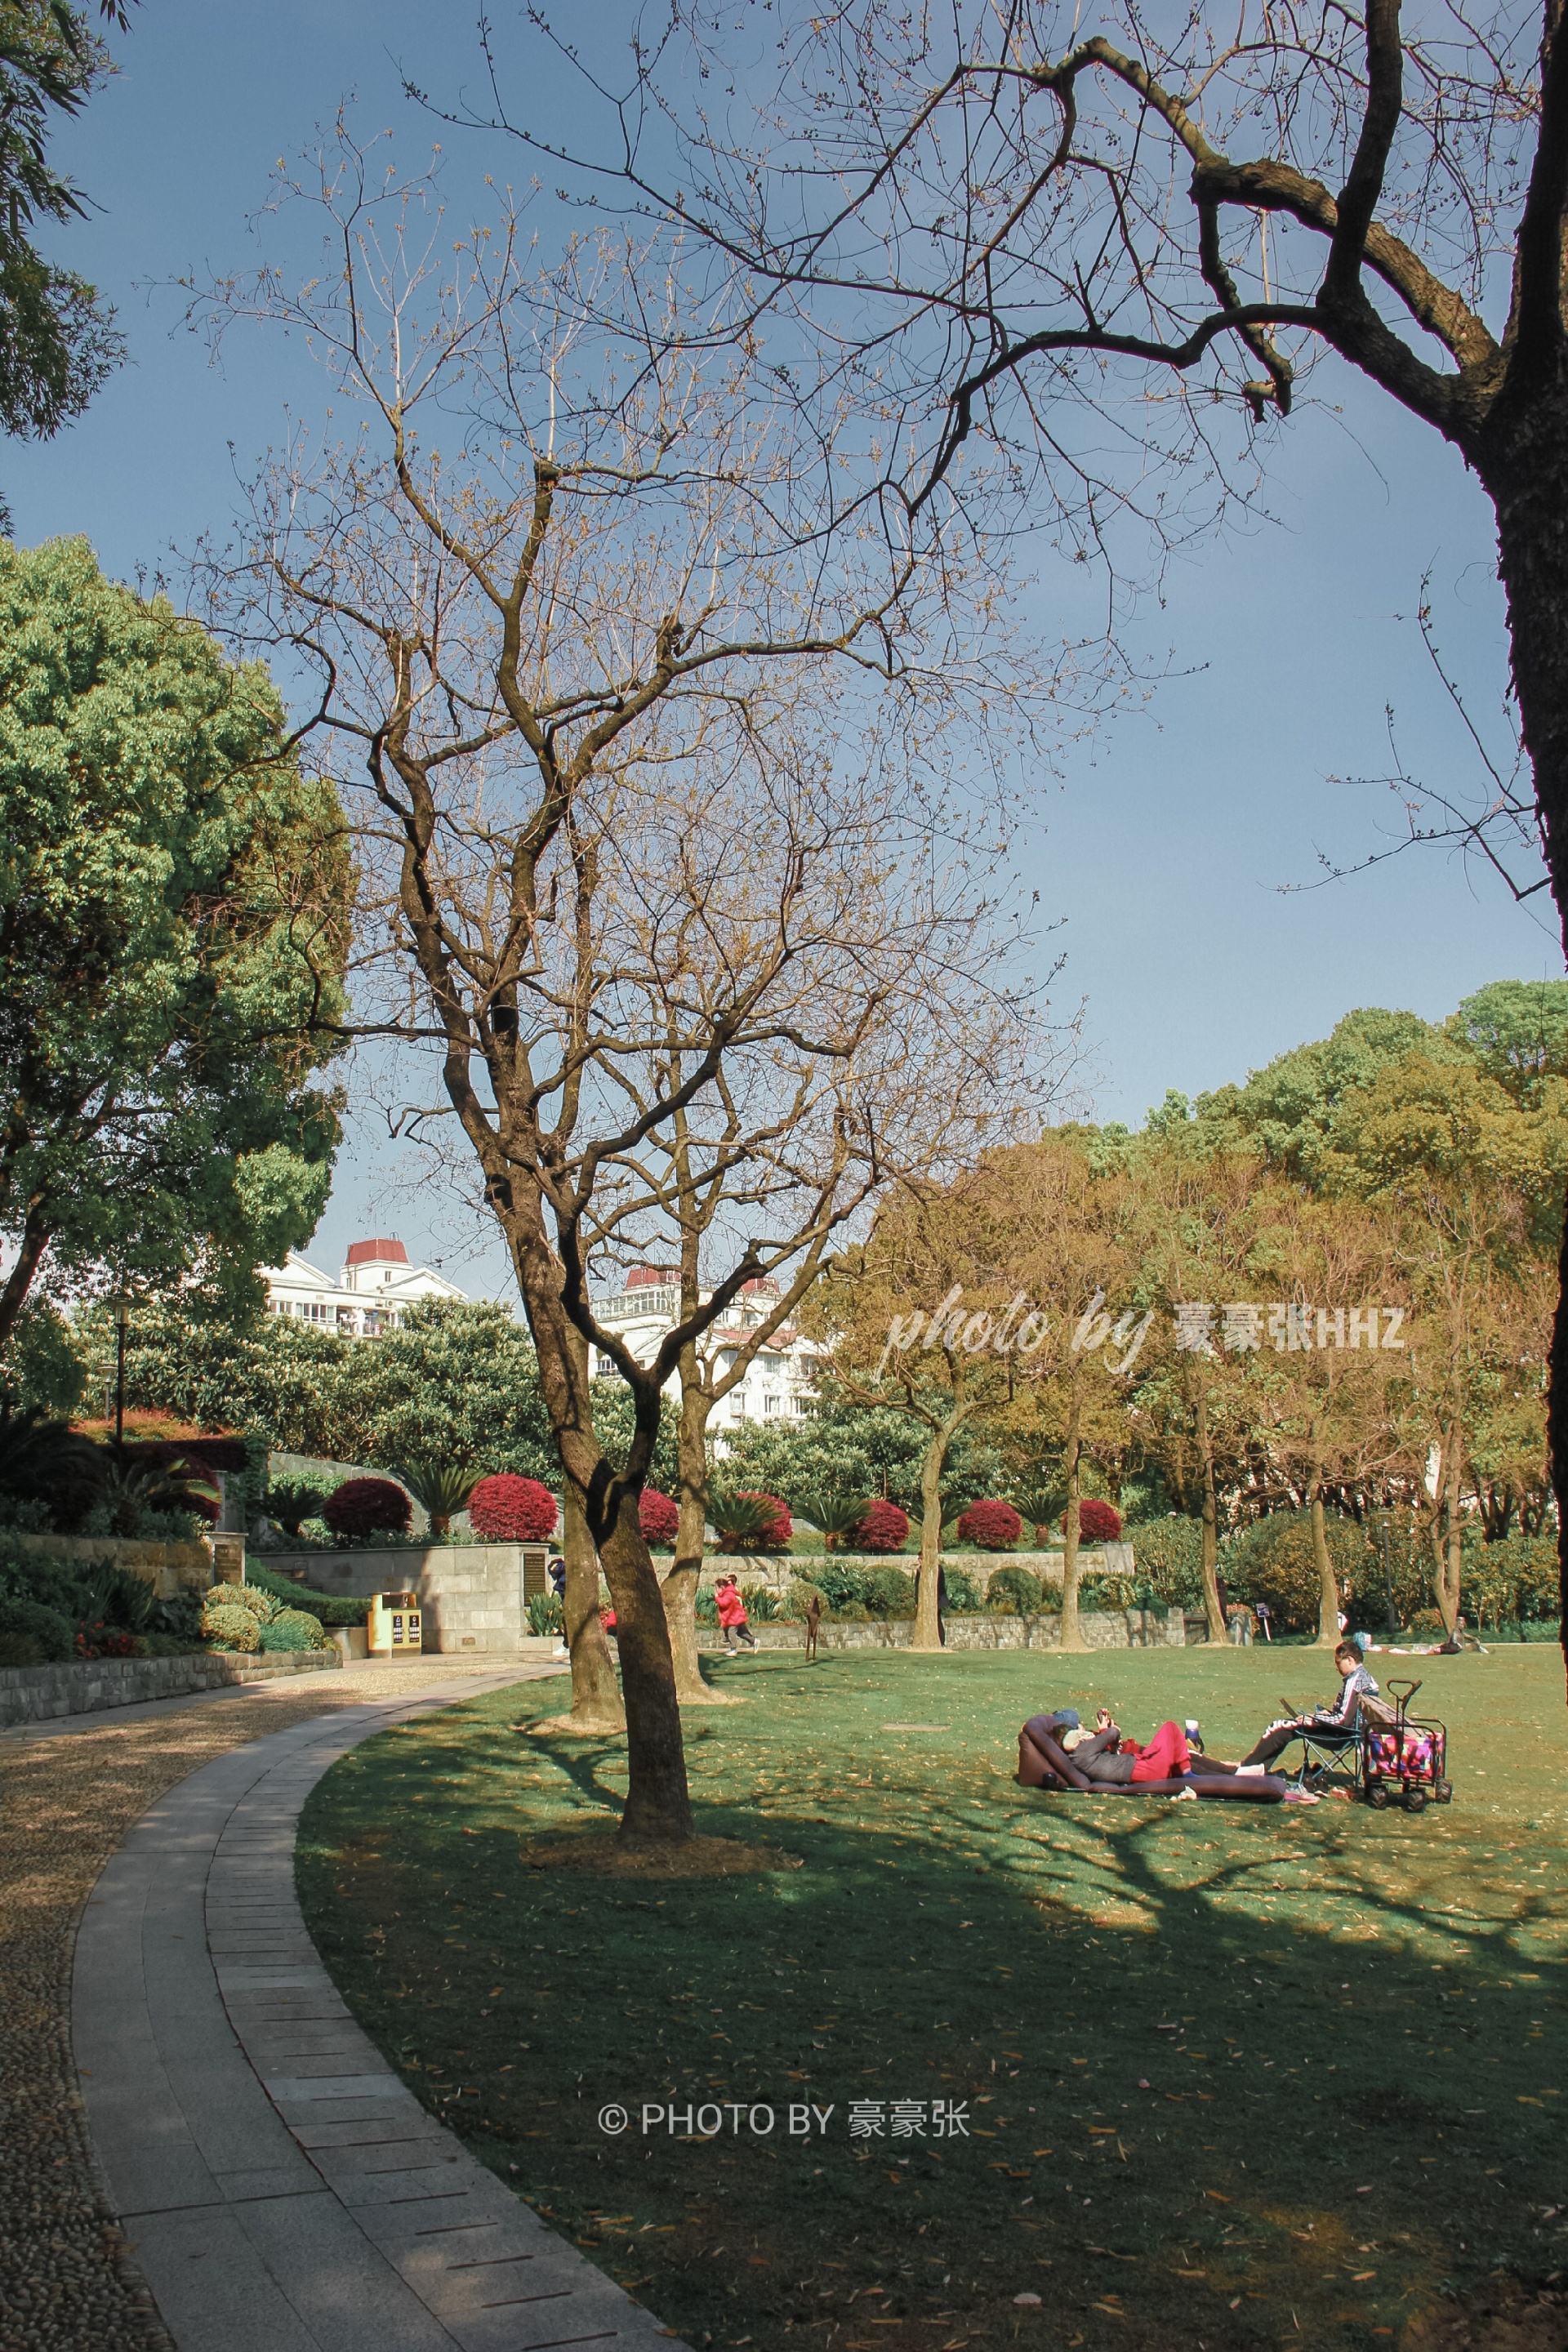 【免费好去处】普陀区祥和公园·踏青赏花来这里上海祥和公园